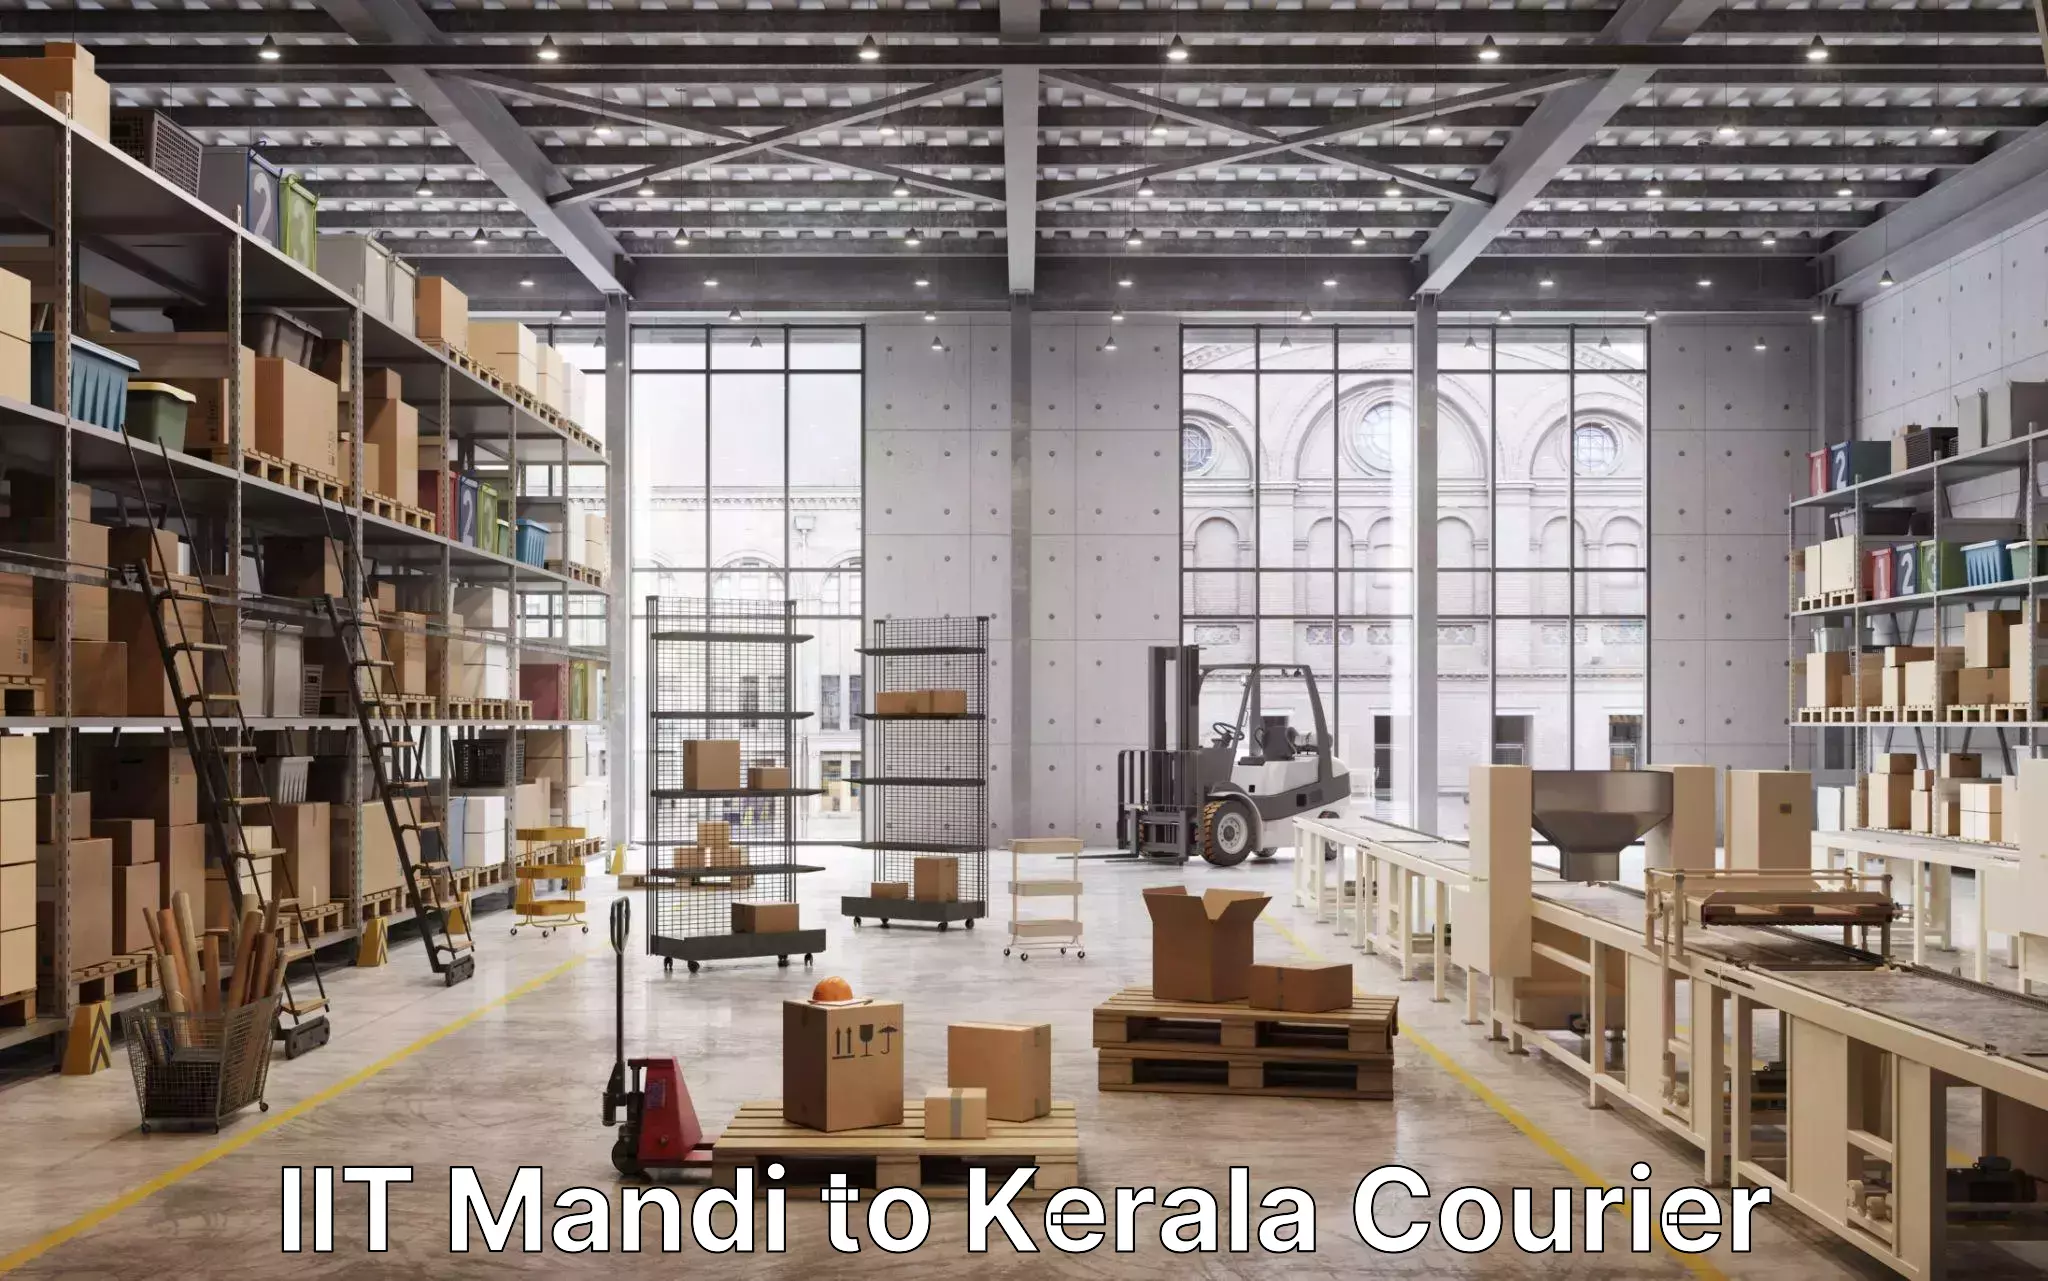 Professional moving company IIT Mandi to Kuchi